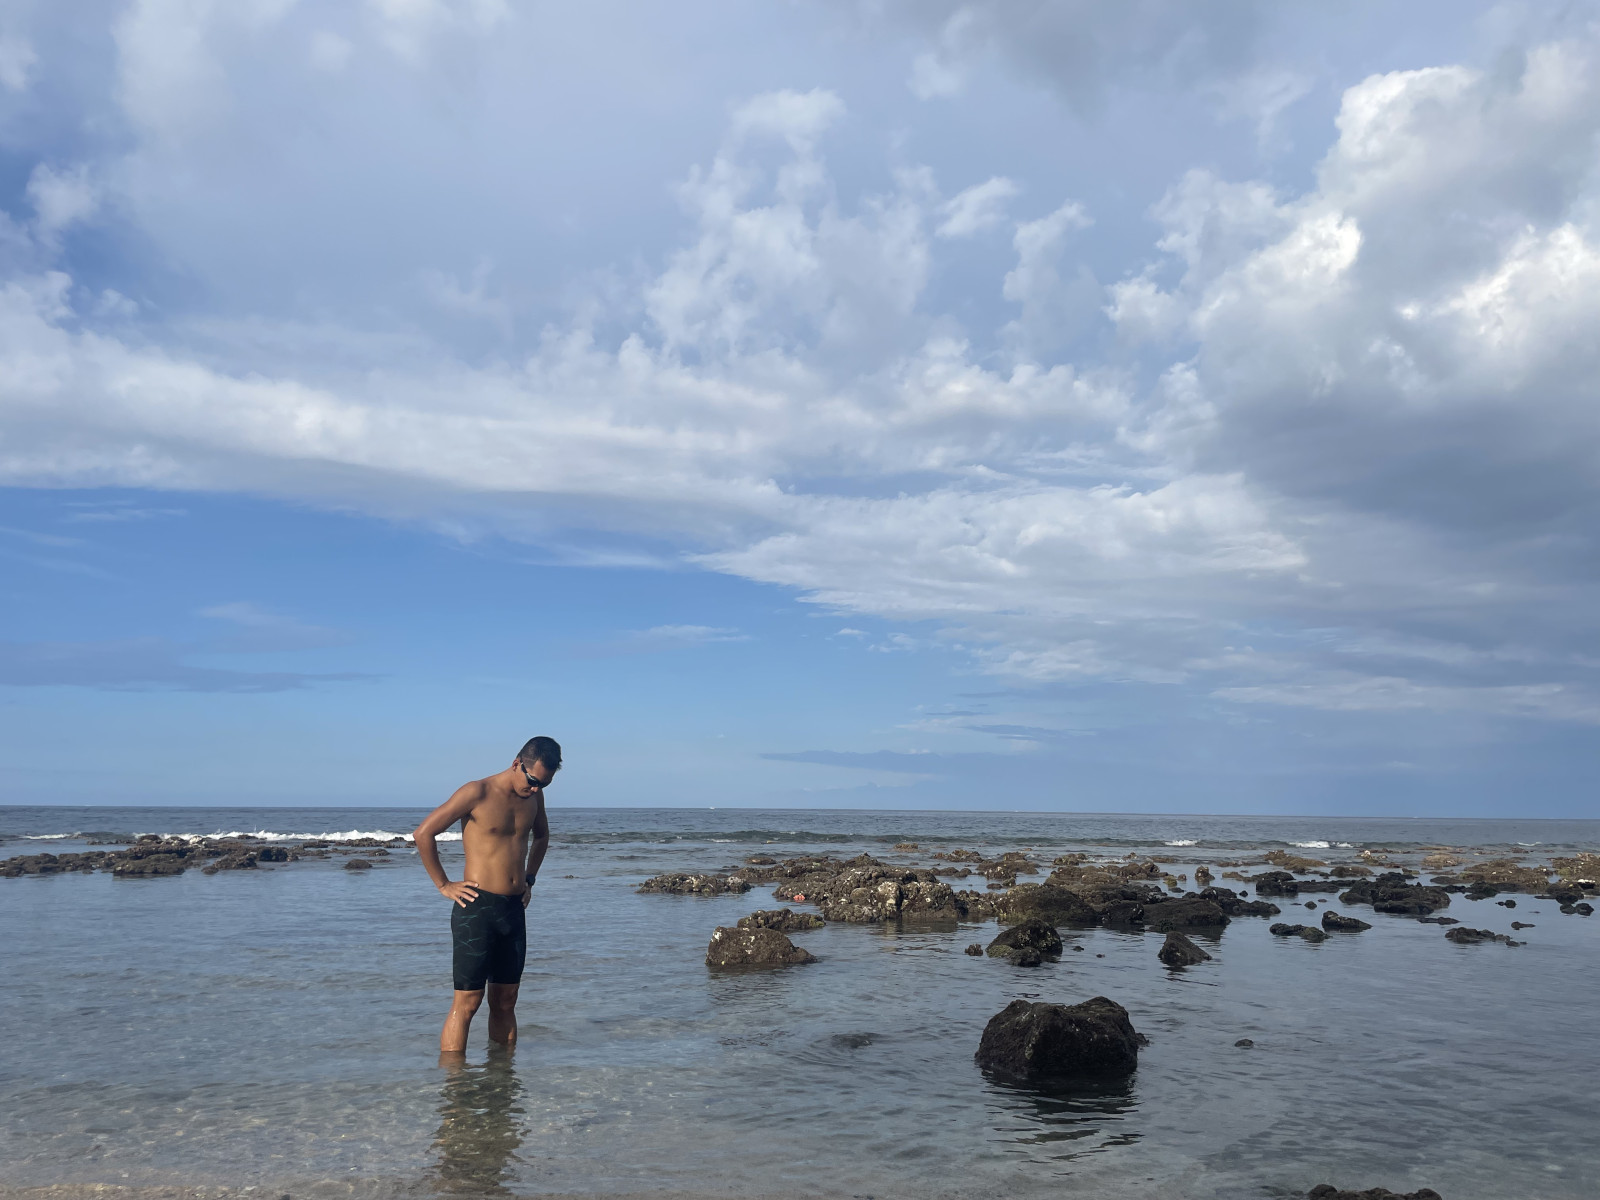 Chạy bộ ngắm biển, bơi lội ngắm san hô ở Amed, Bali - ibus beach amed 1